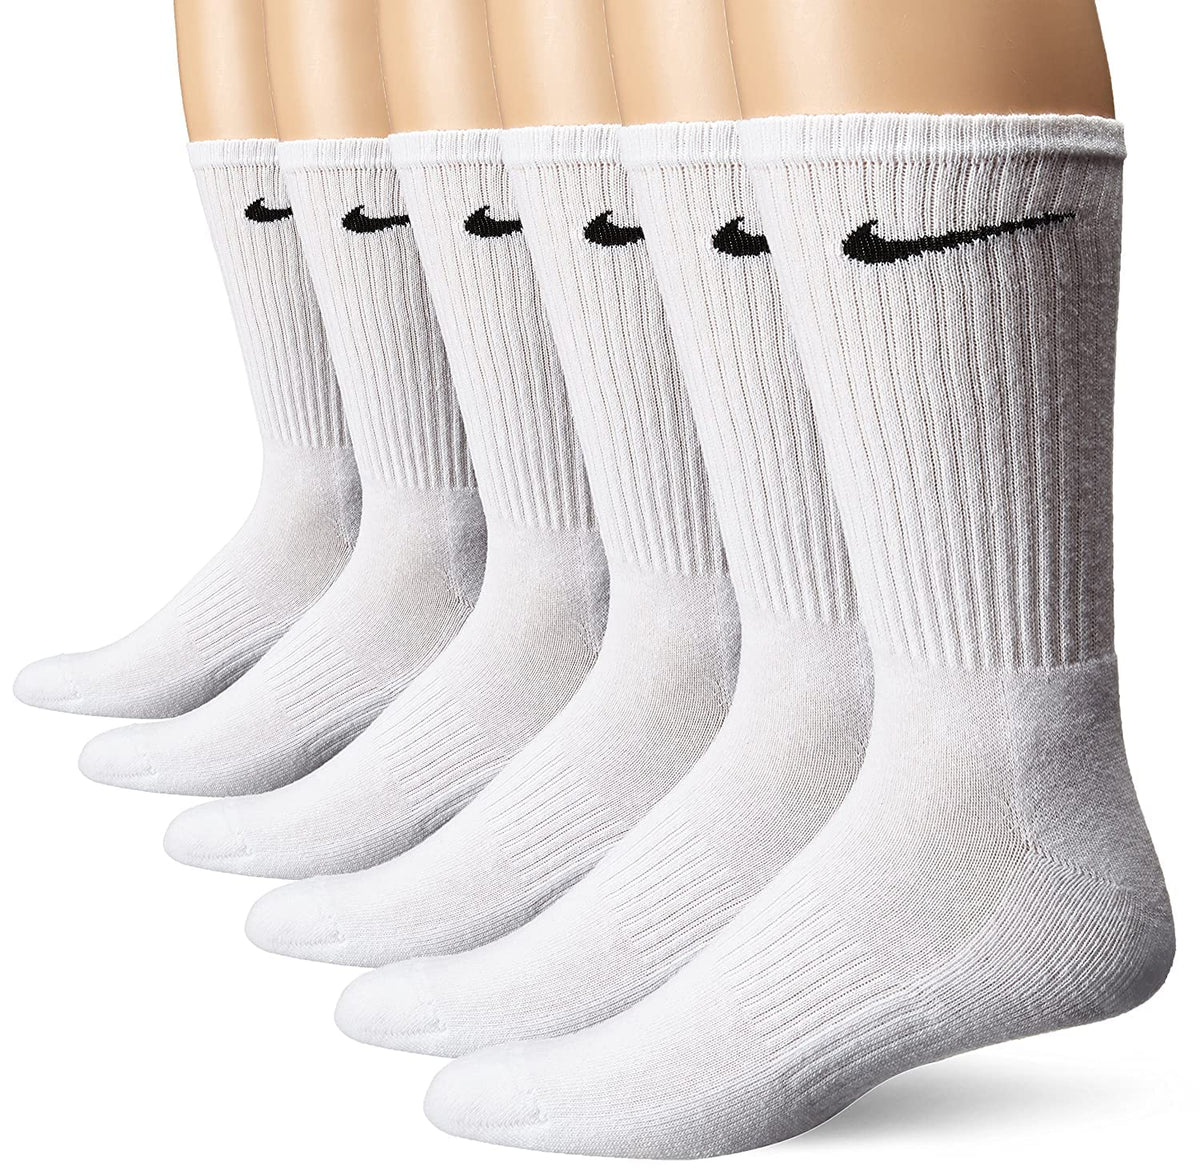 NIKE Unisex Performance Cushion Crew Socks with Band (6 Pairs), White/Black, Large